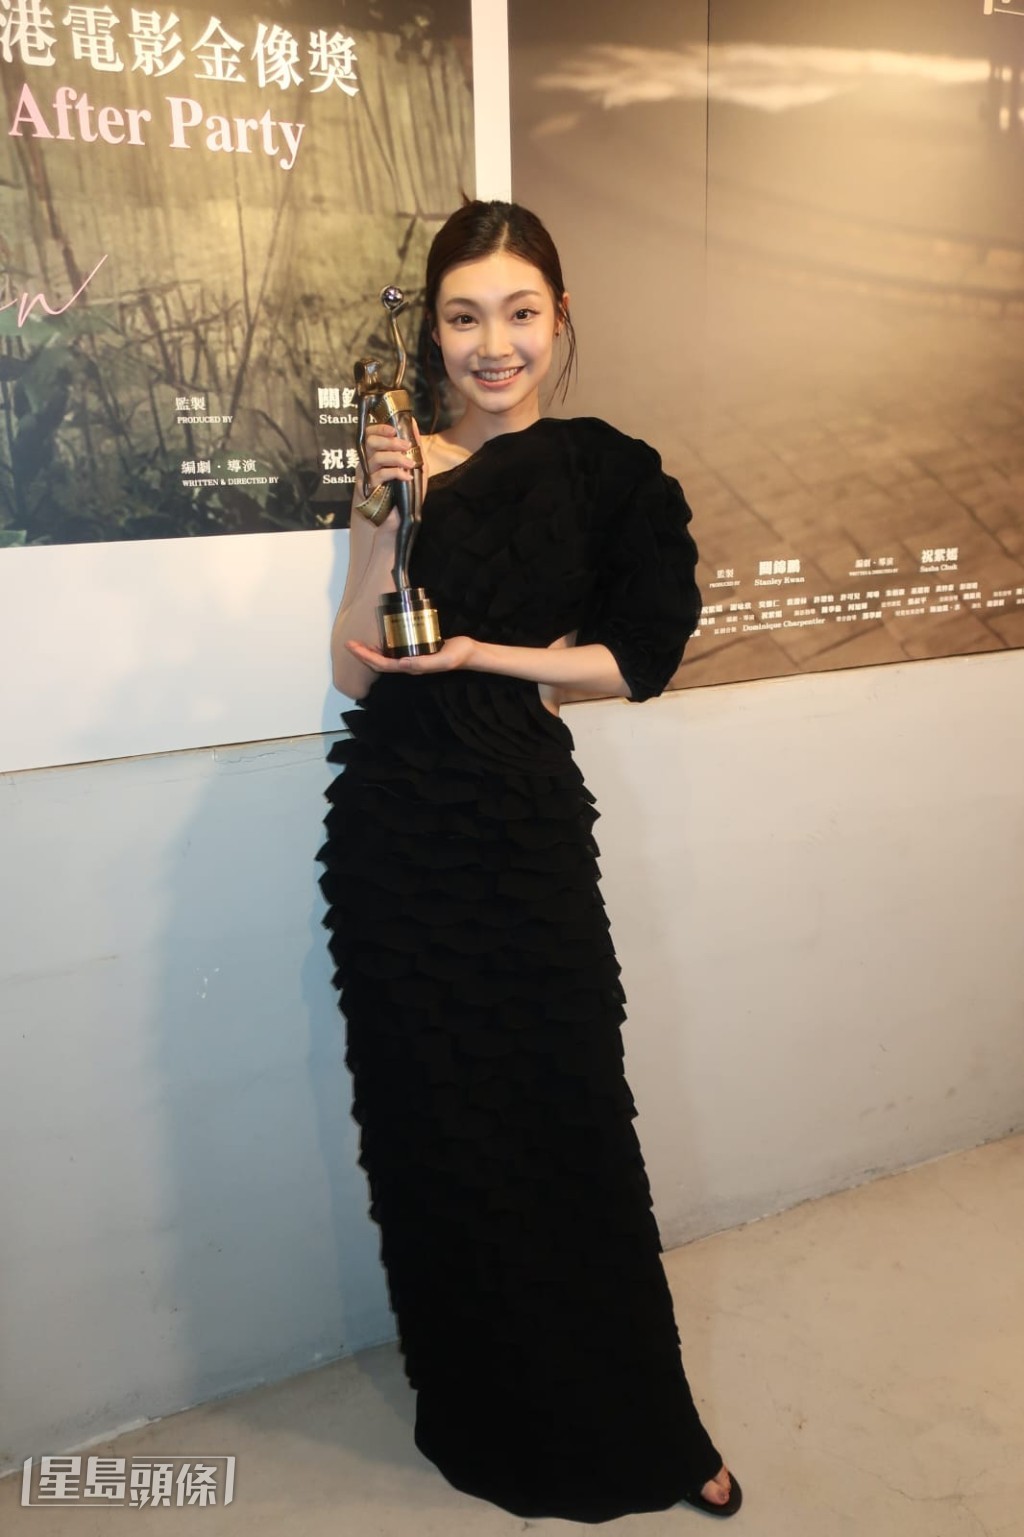  谢咏欣说奖项是给《但》片台前幕后。